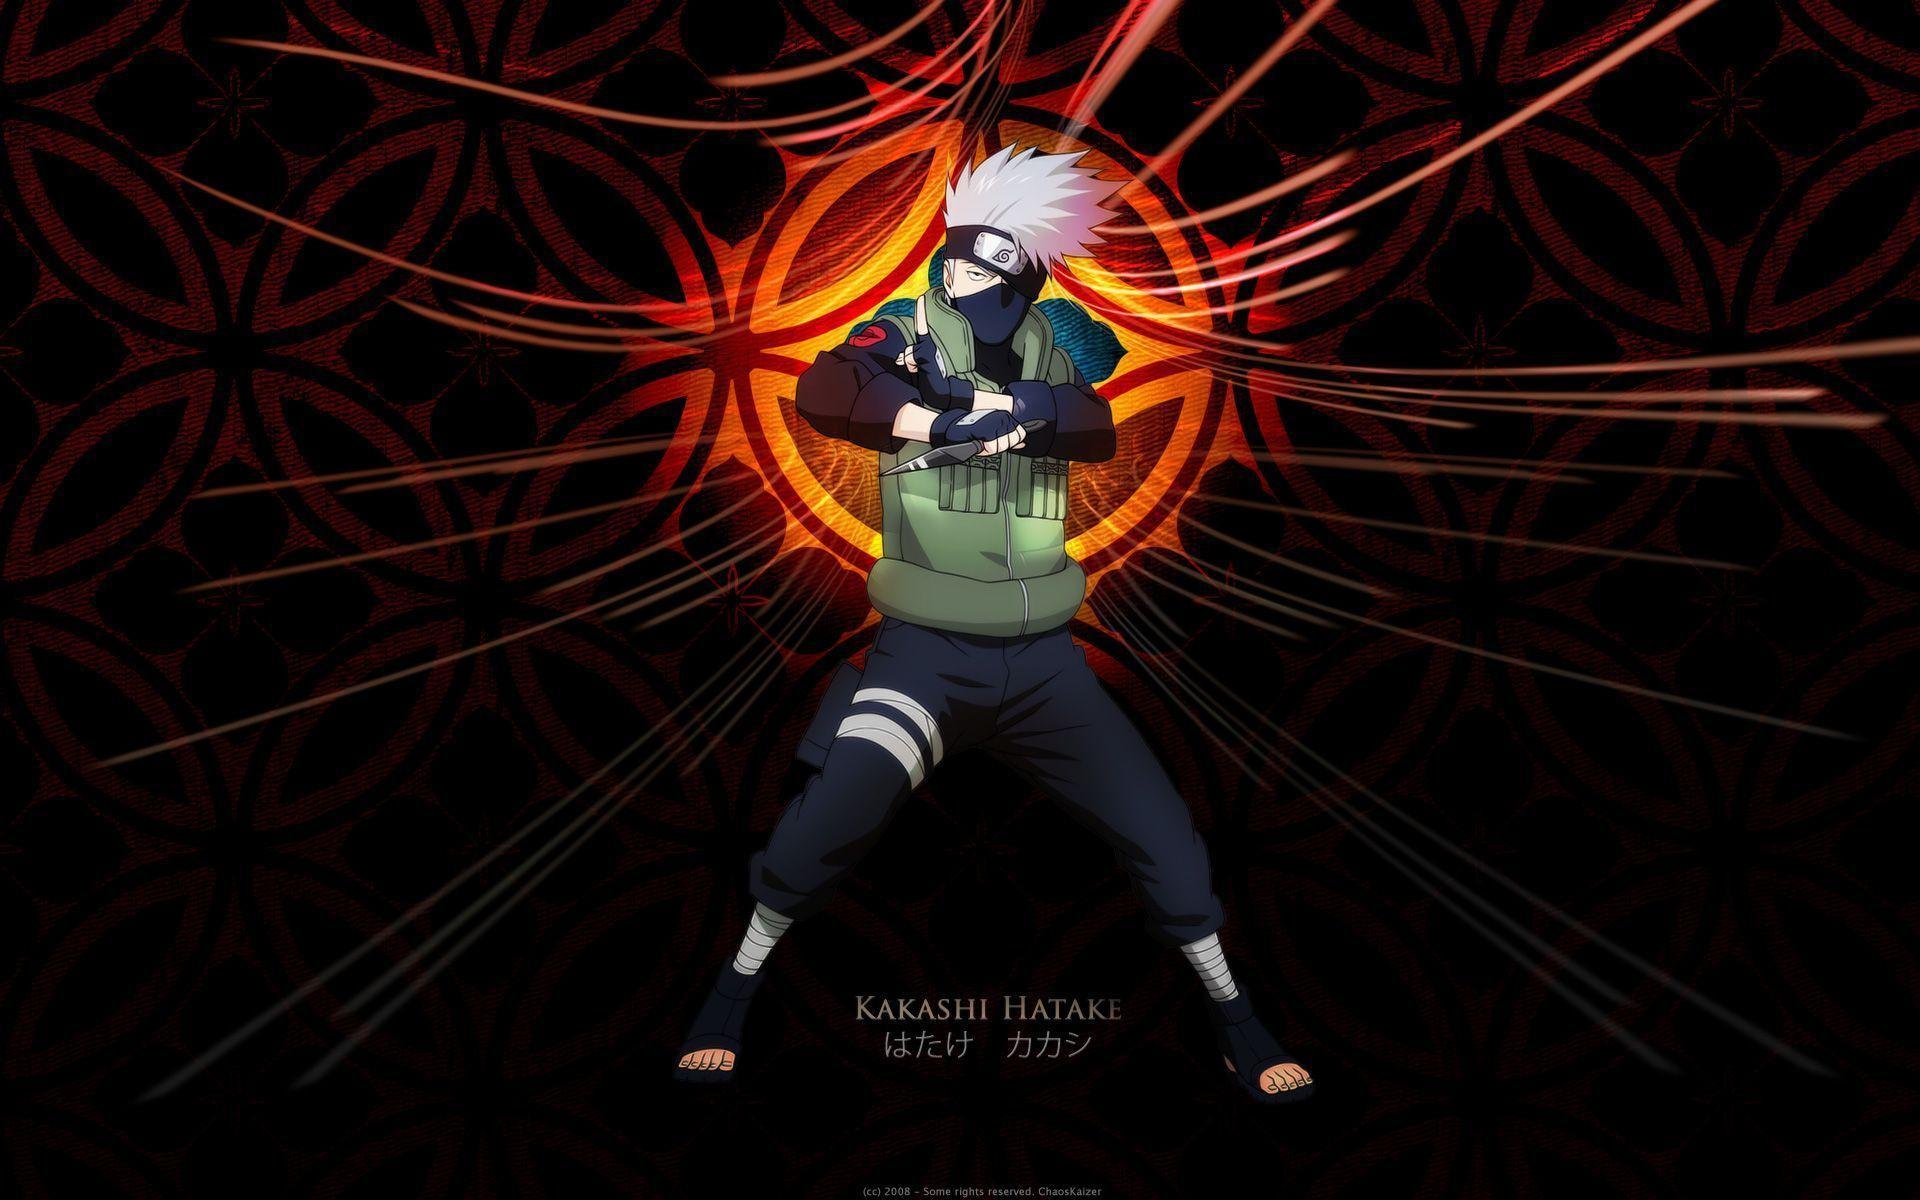 Naruto Shippuden Wallpaper 16 Background. Wallruru